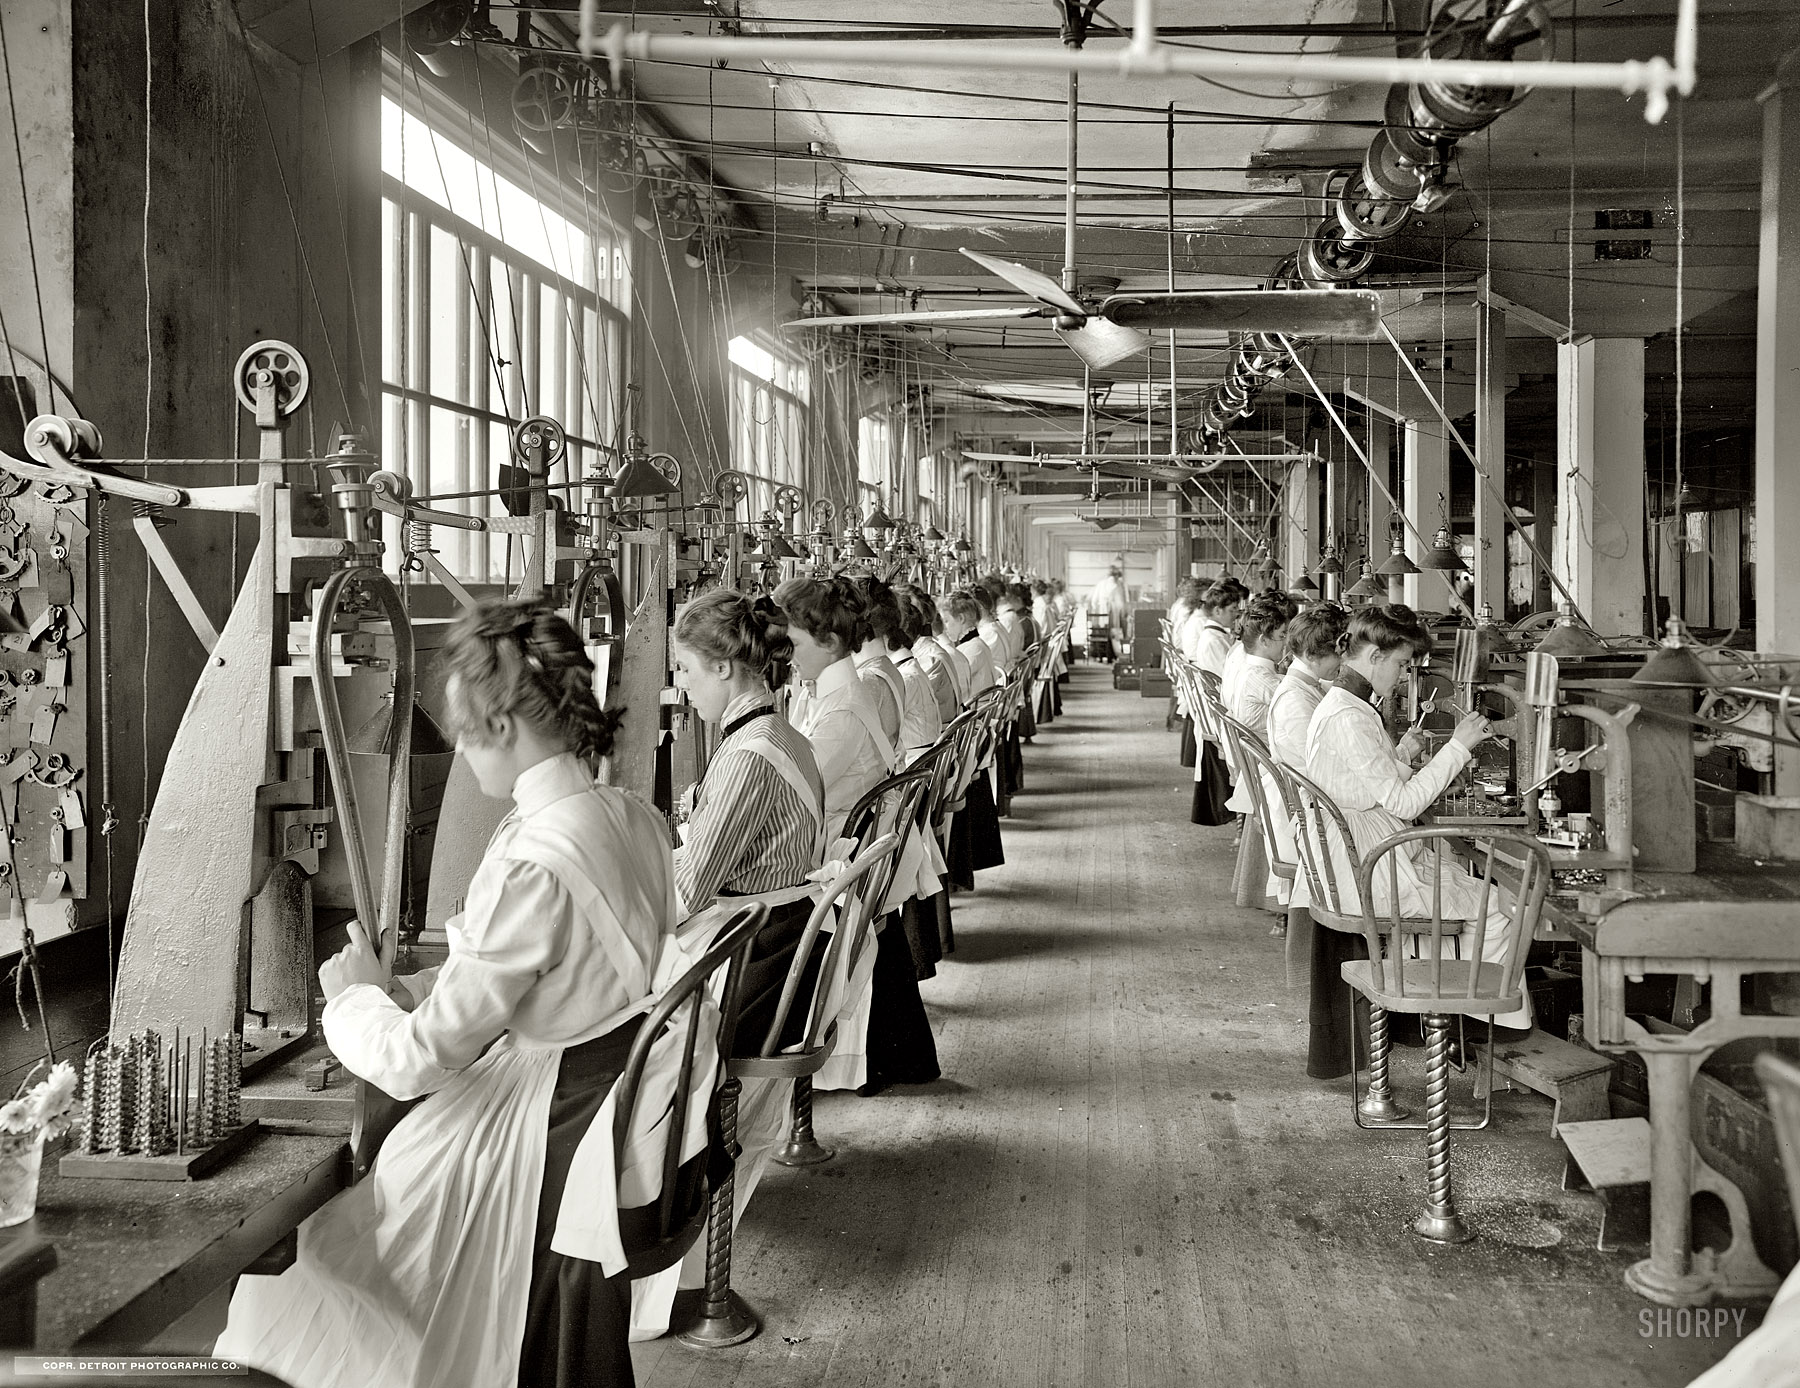 Производство 19 век. Фабрика в начале 20 века в США. Ткацкая фабрика Великобритания 19 век. Работницы на ткацкой фабрике 19 век Англия. Ткацкие фабрики в США В 18 веке.